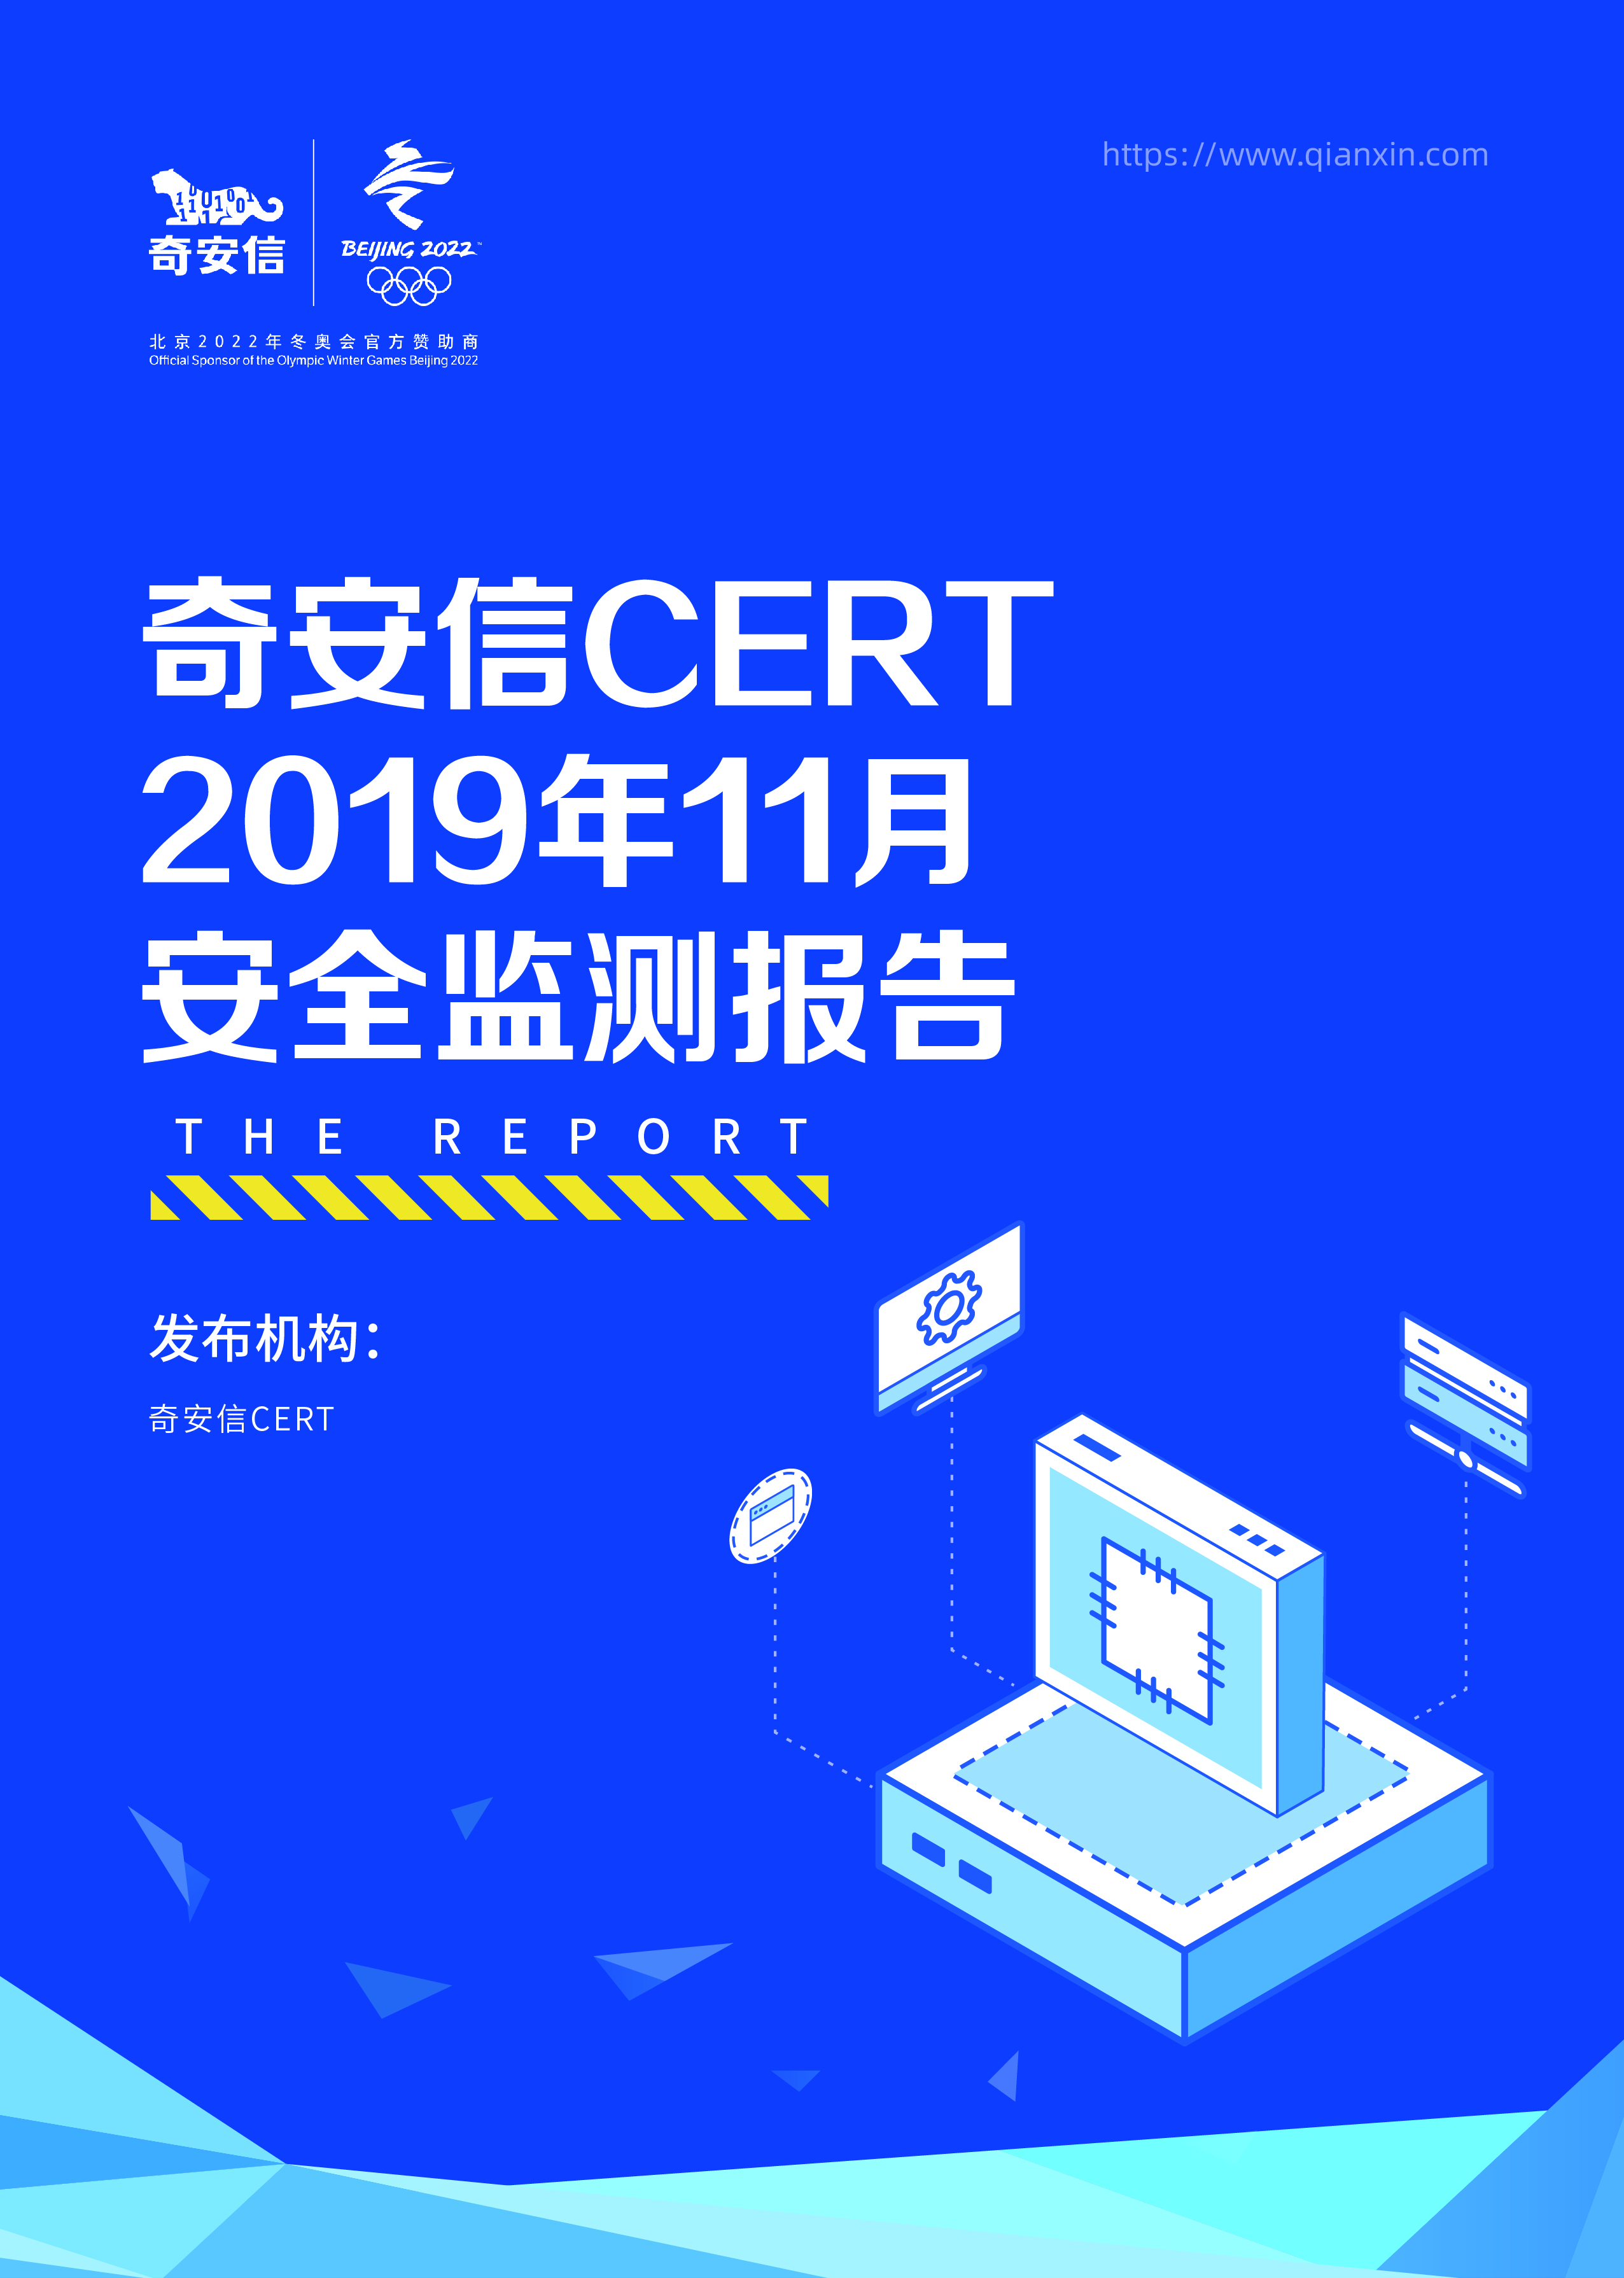 奇安信 CERT 2019年11月安全监测报告